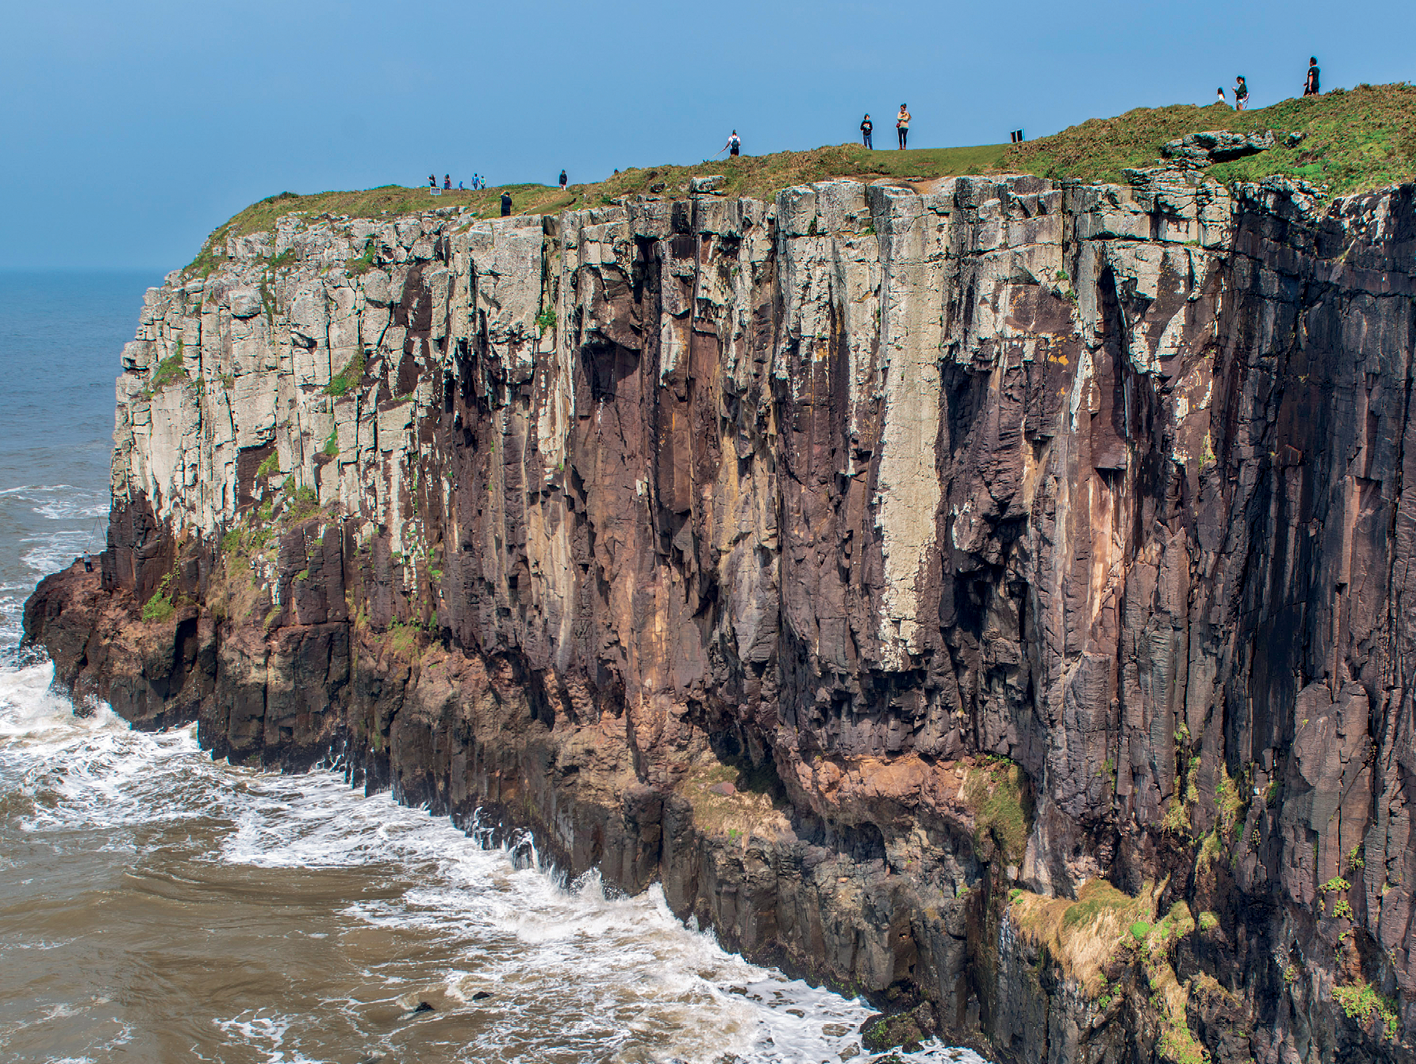 Fotografia. Vista de uma grande formação rochosa de frente para o oceano, com a feição de um paredão à beira mar. No topo, acima do paredão, há diversas pessoas observando.